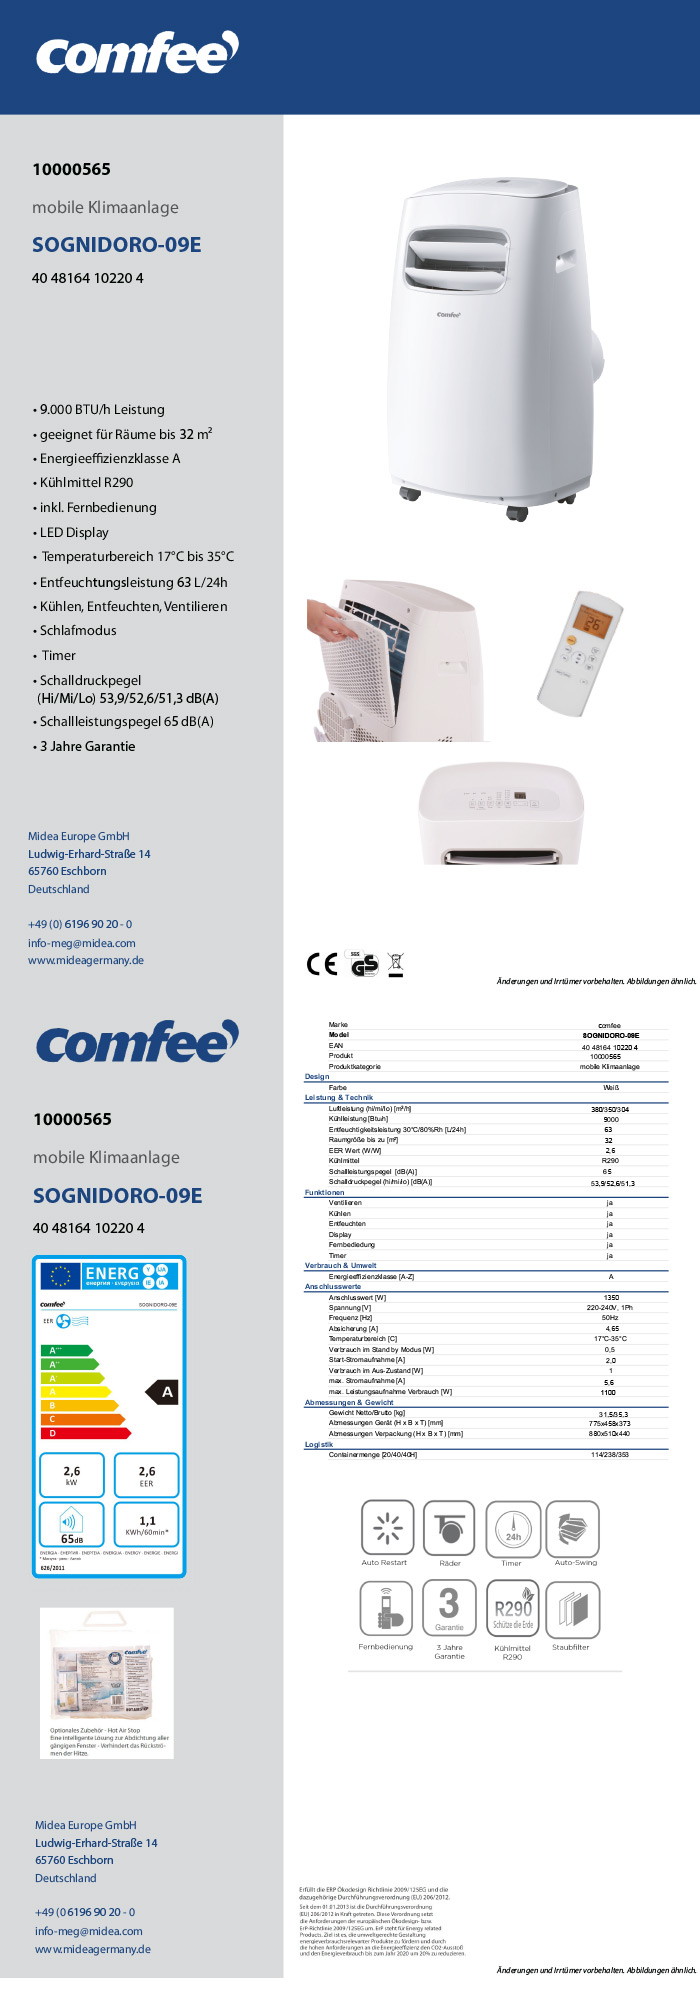 | LIDL mobile Klimaanlage »SOGNIDORO-09E« Comfee